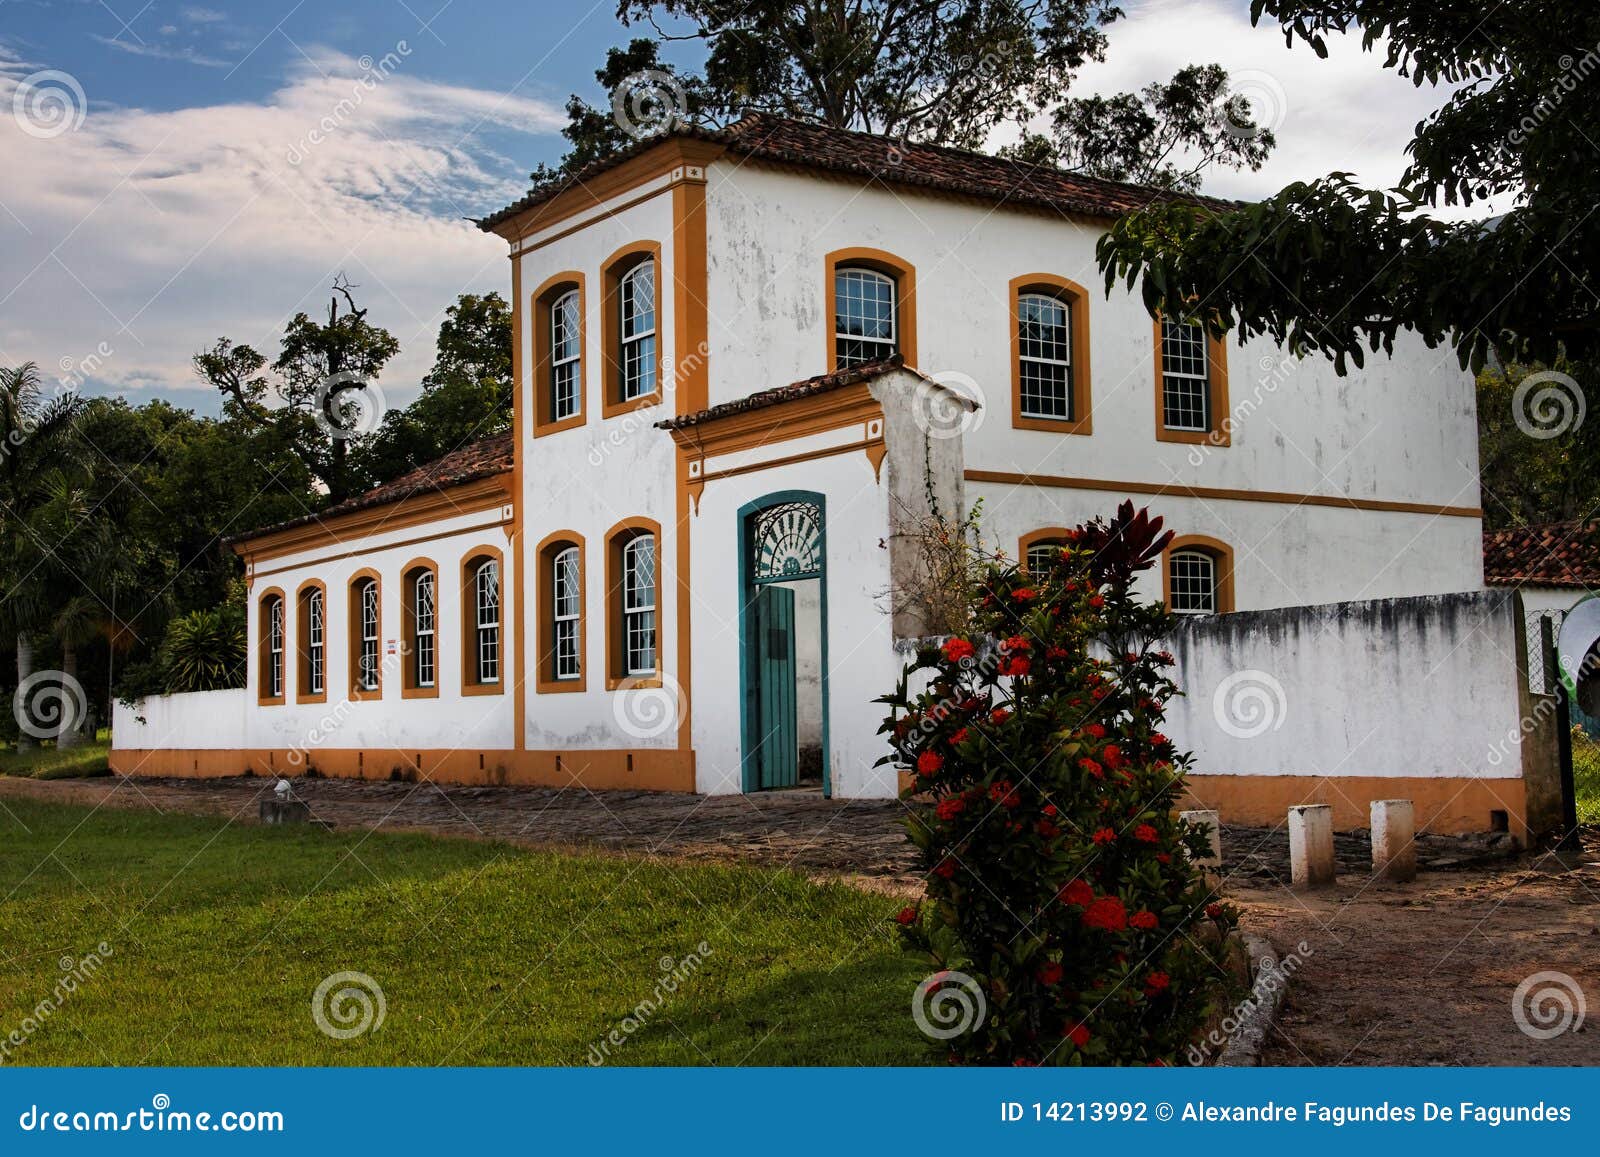 acores house in biguacu